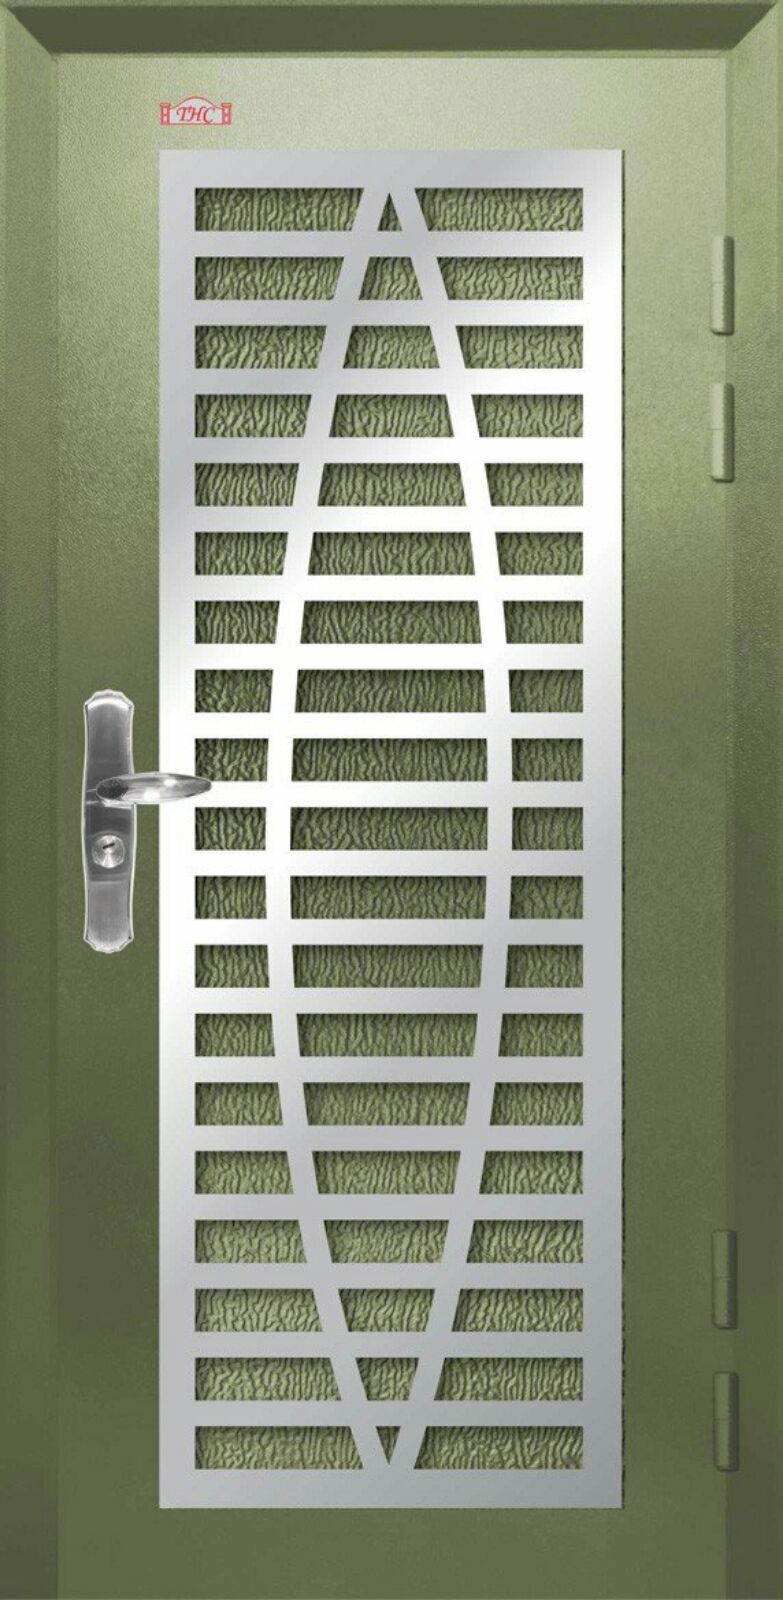 Pintu Keselamatan : P1-W93 Pintu Keselamatan Daun Tunggal Pintu Keselamatan Carta Pilihan Warna Corak